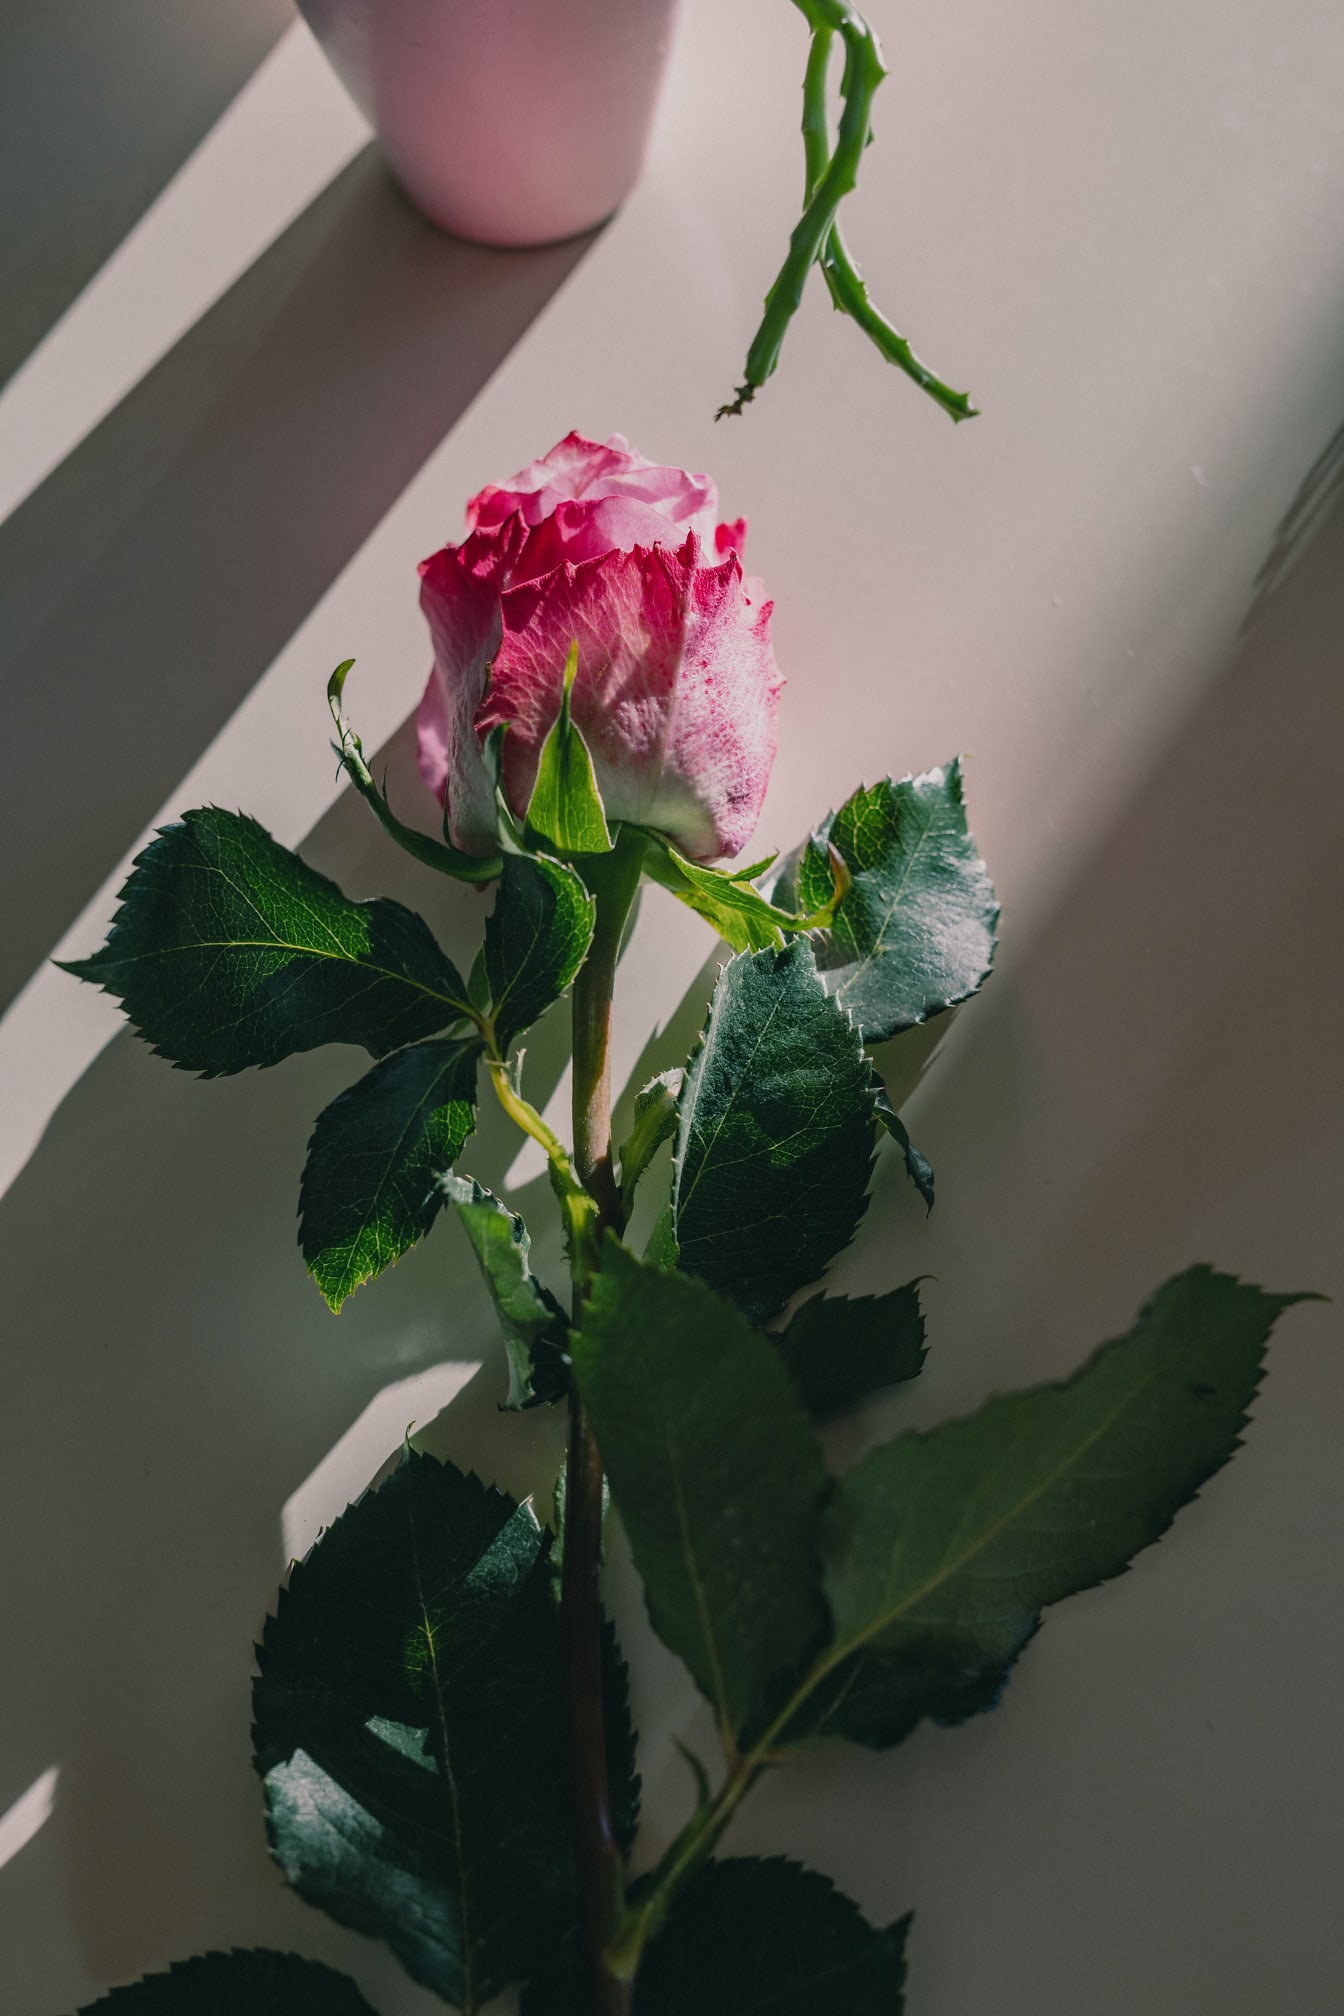 Rosaaktig rosenknopp i skugga på beige bordsnärbild foto